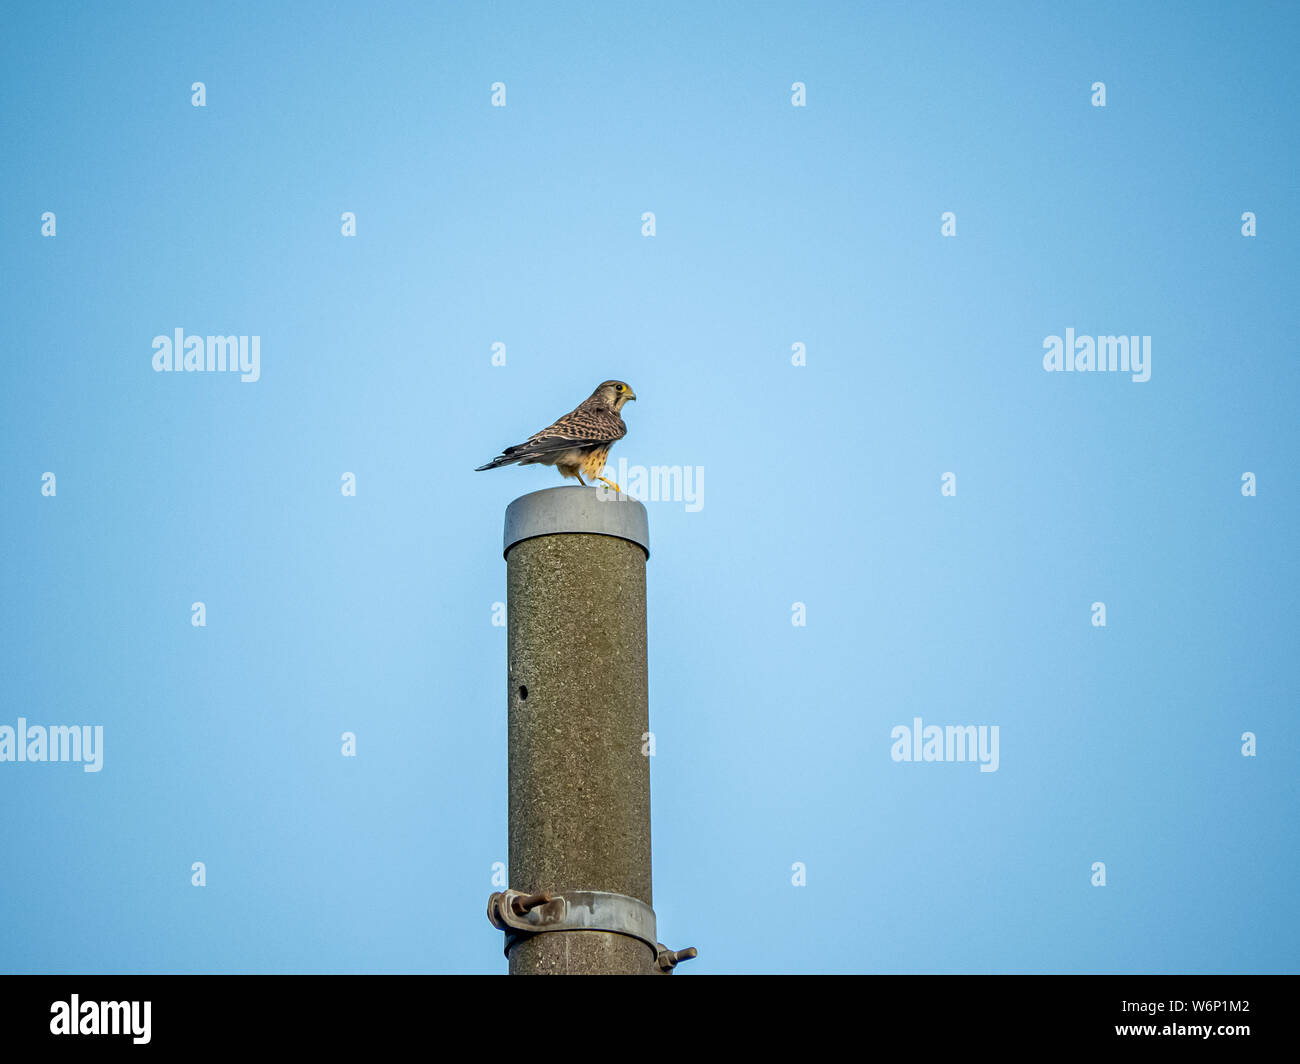 A Eurasian kestrel, Falco tinnunculus, perches with a fresh kill on top of a light pole in western Yokohama, Japan. Stock Photo